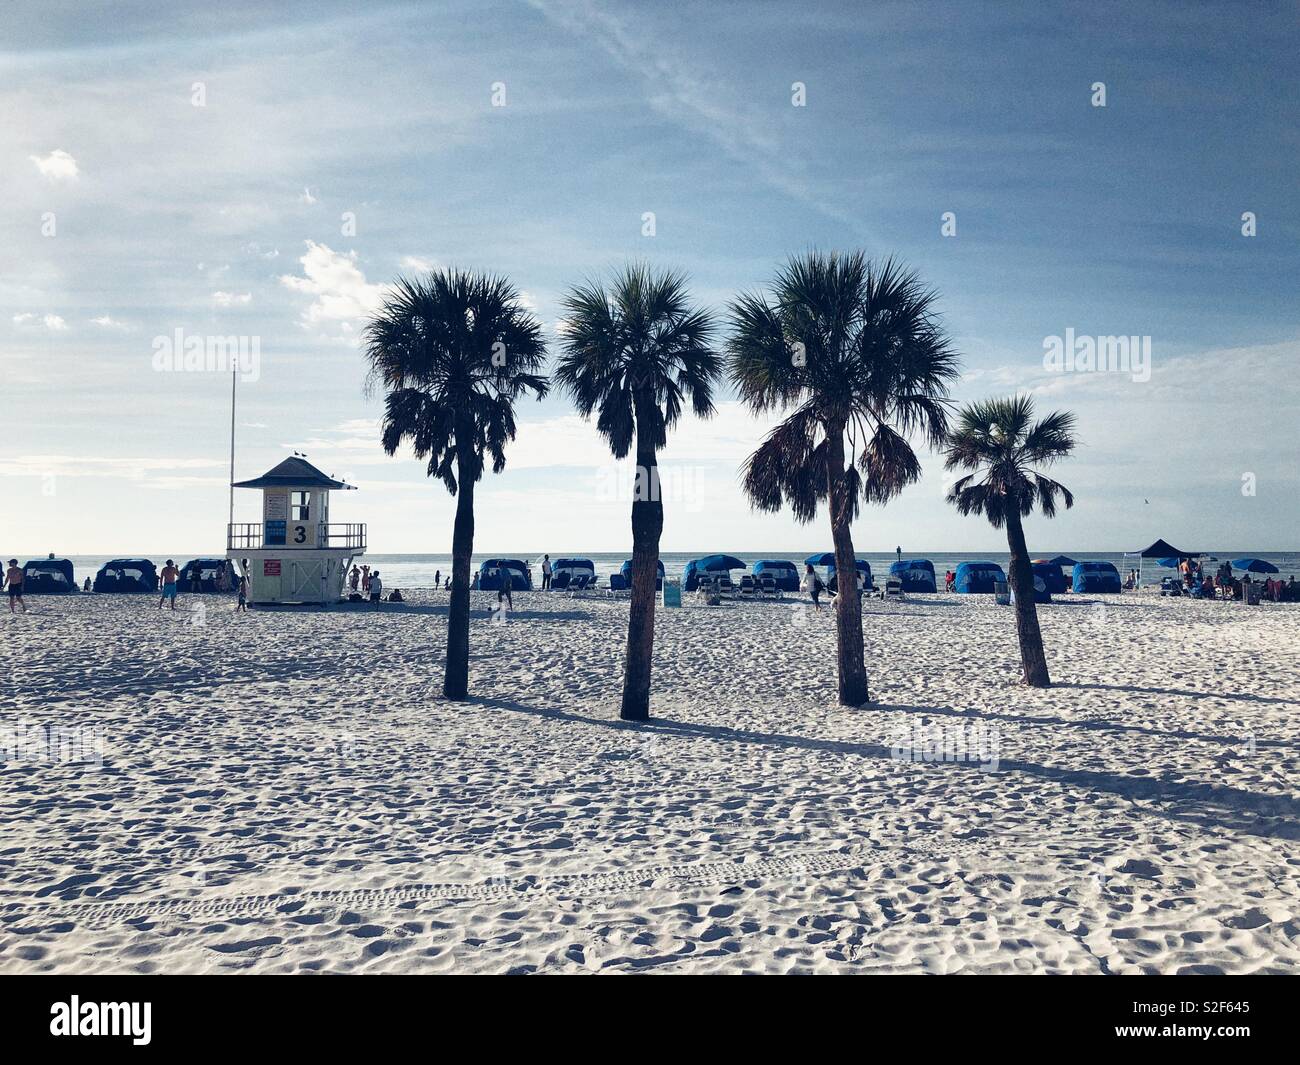 Lifeguard station, palmiers et des cabanas sur le sable blanc de la plage de Clearwater en Floride Banque D'Images